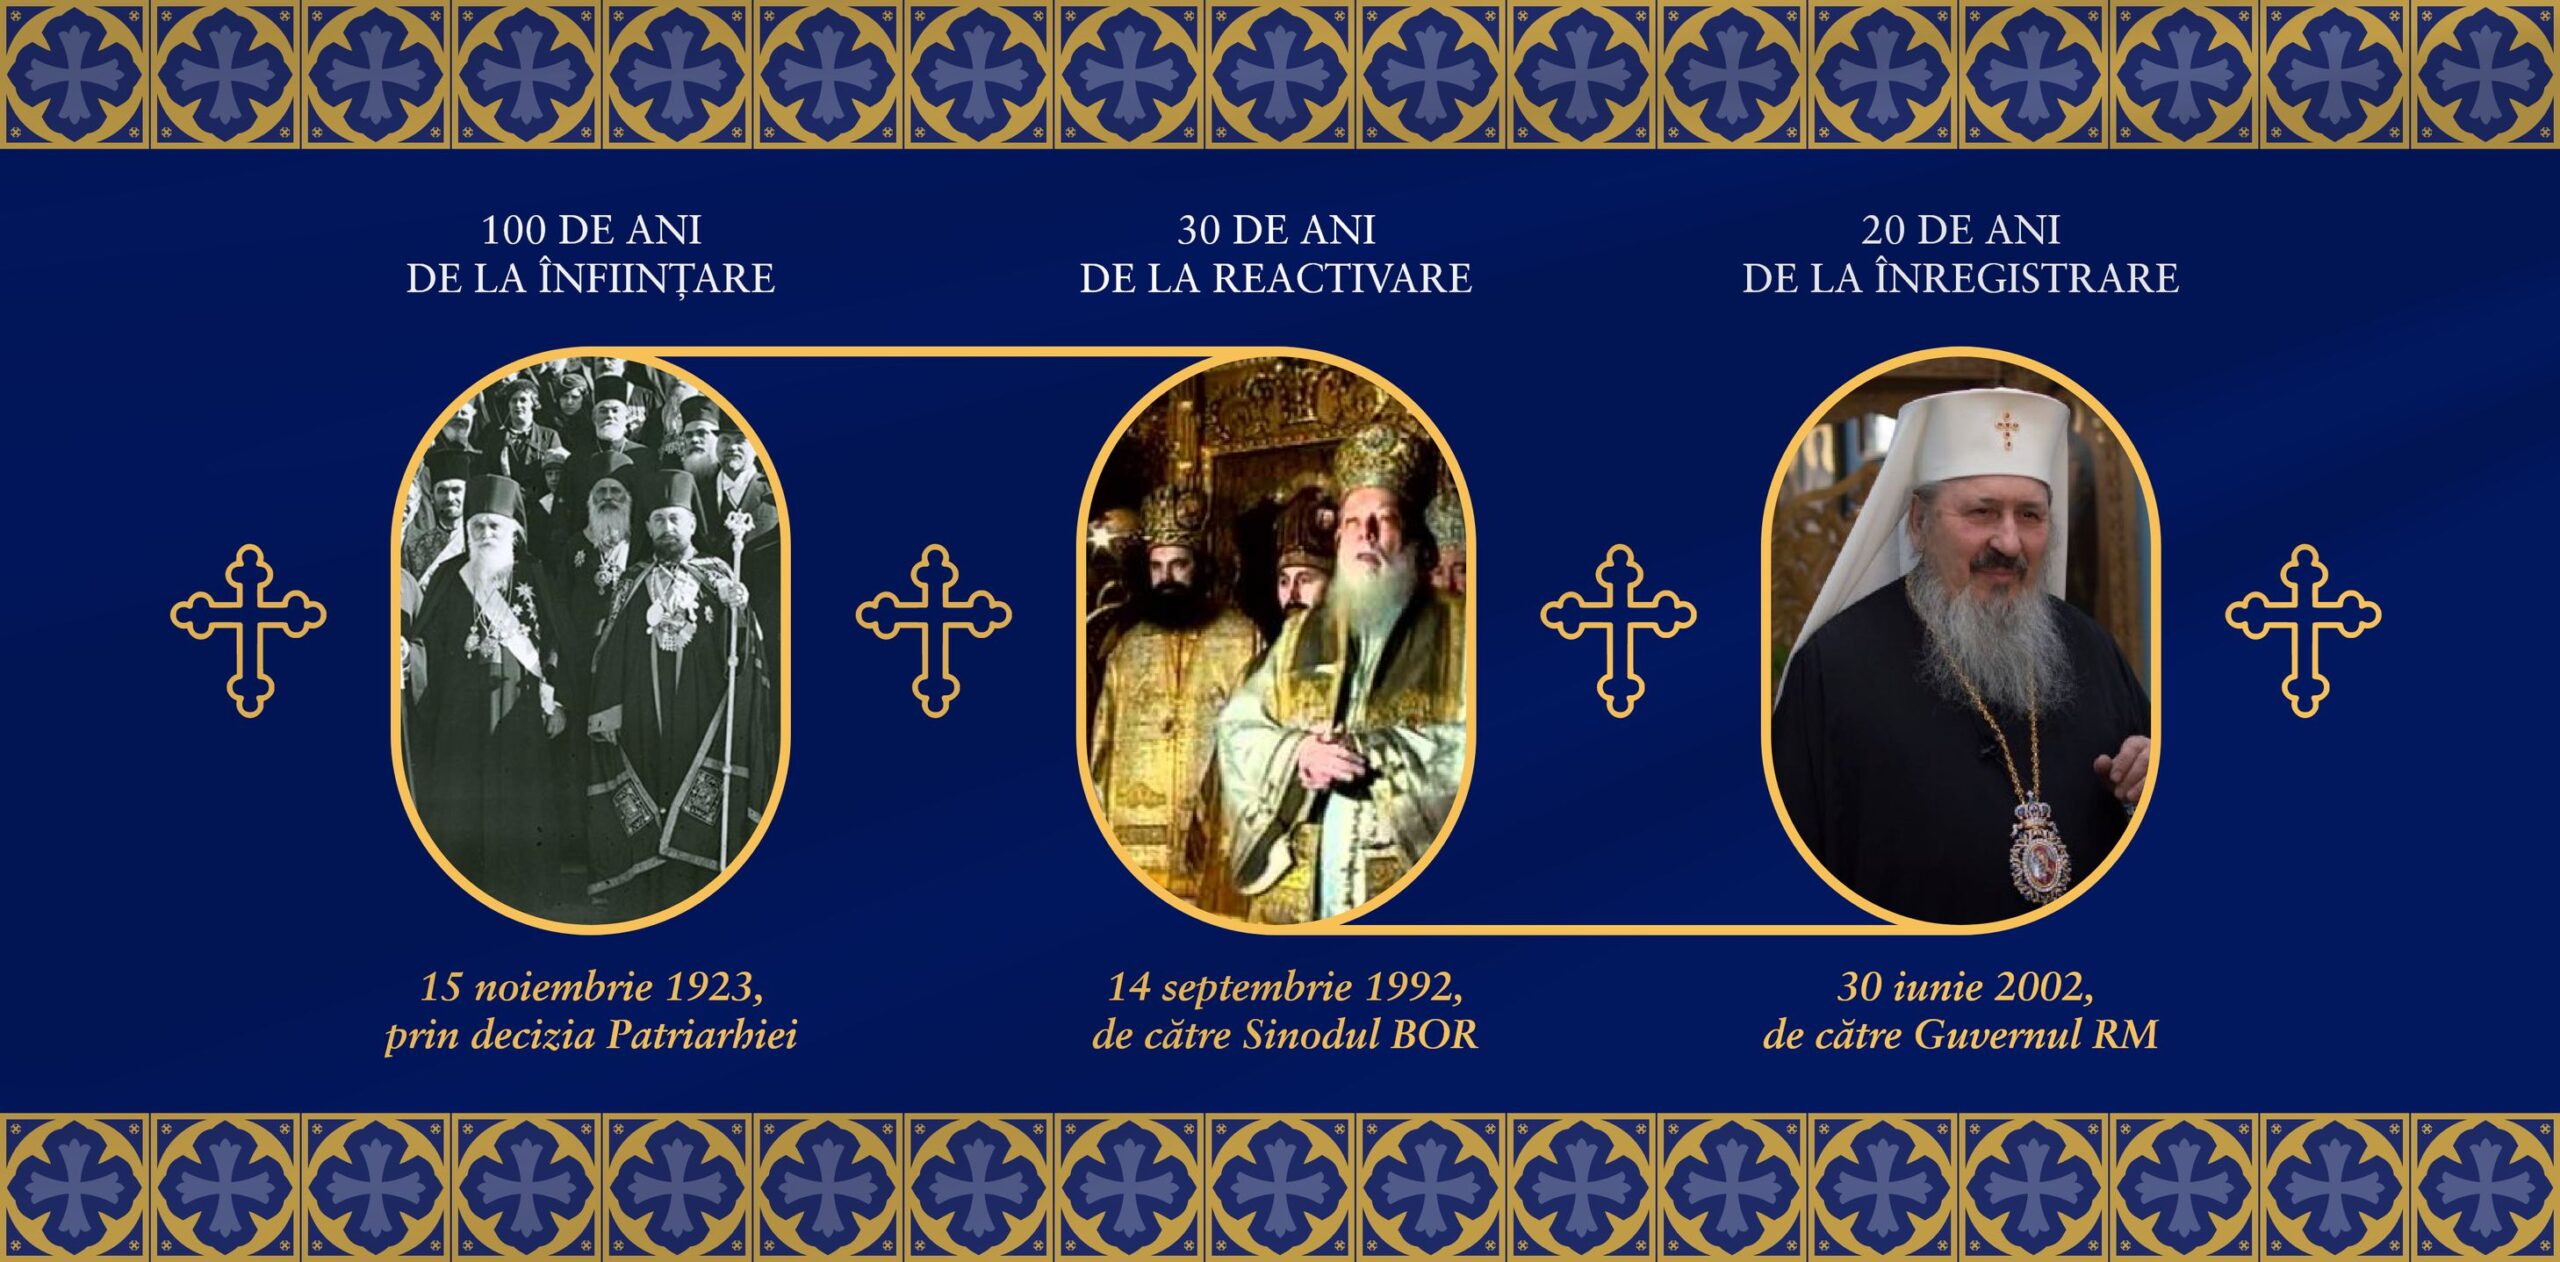 30 de ani de la reactivarea Mitropoliei Ortodoxe Române a Basarabiei, sărbătoriți la Chișinău de Înălțarea Sfintei Cruci, pe 14 septembrie 2022